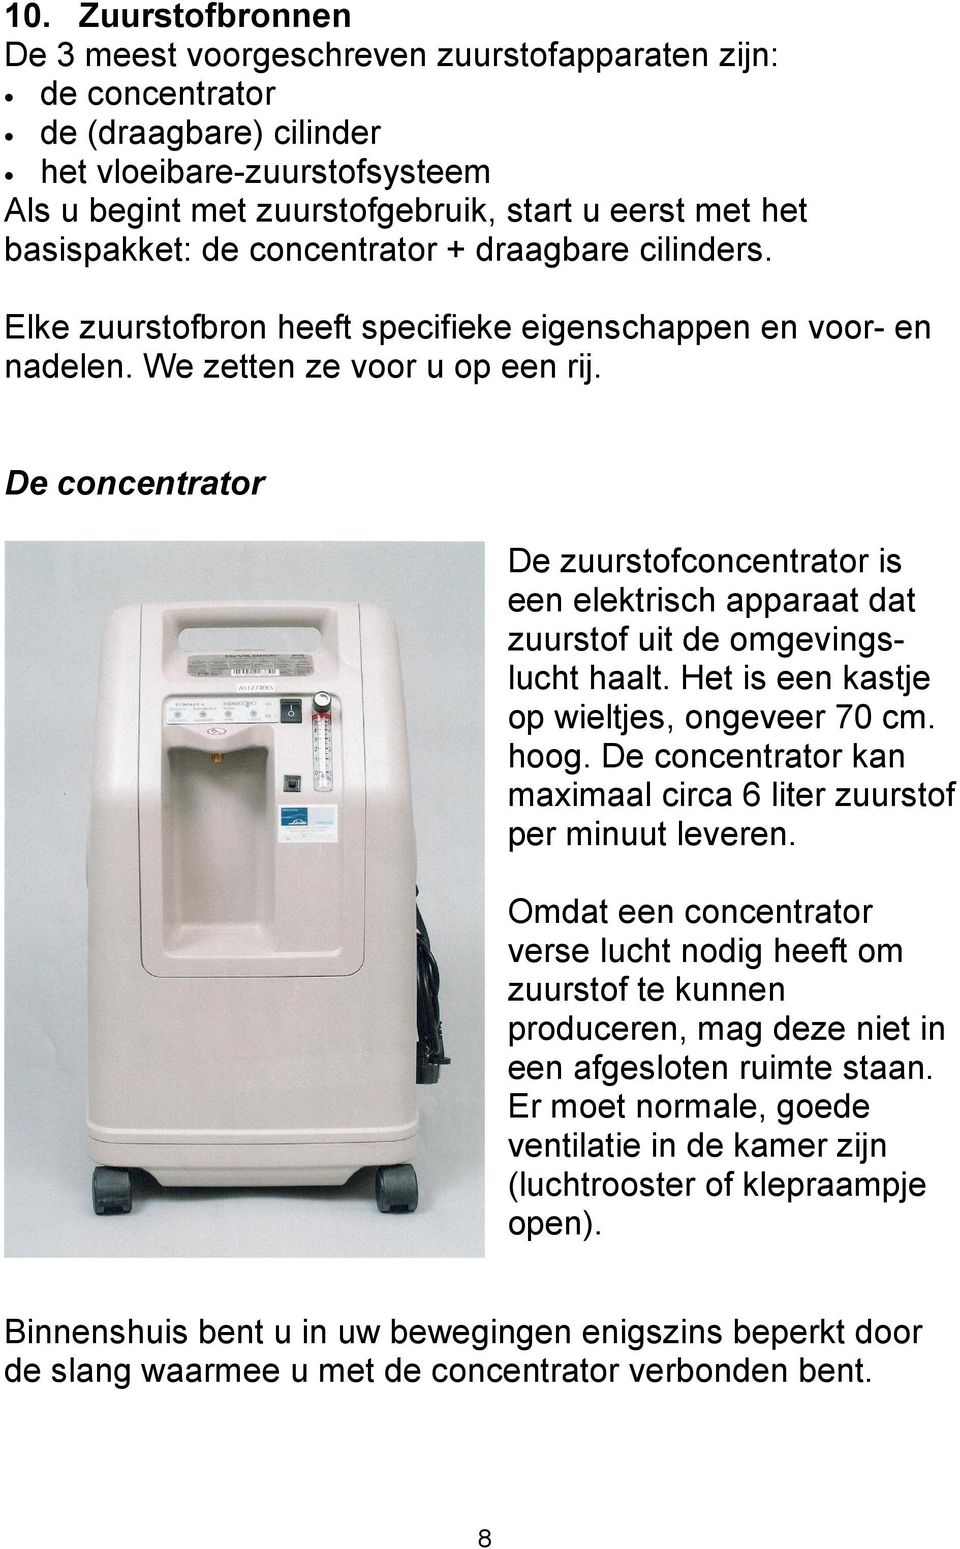 De concentrator De zuurstofconcentrator is een elektrisch apparaat dat zuurstof uit de omgevingslucht haalt. Het is een kastje op wieltjes, ongeveer 70 cm. hoog.